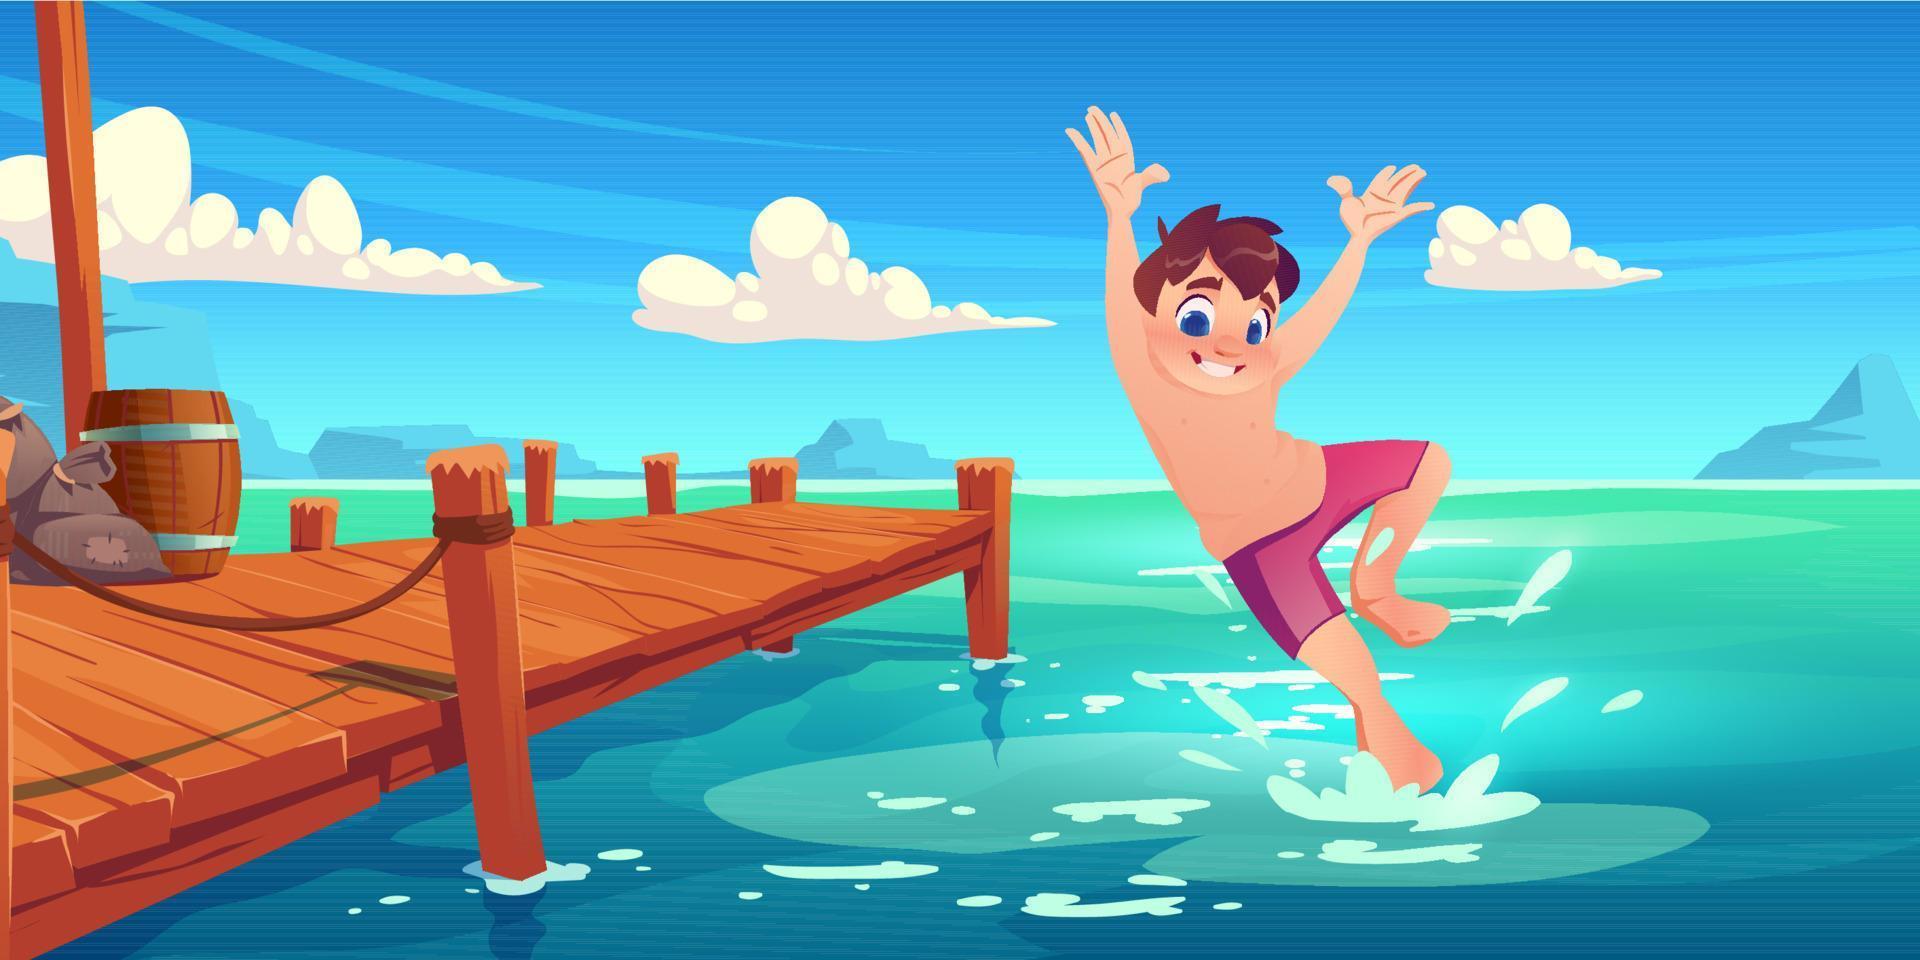 niño feliz salta al agua del lago desde el muelle de madera, vector